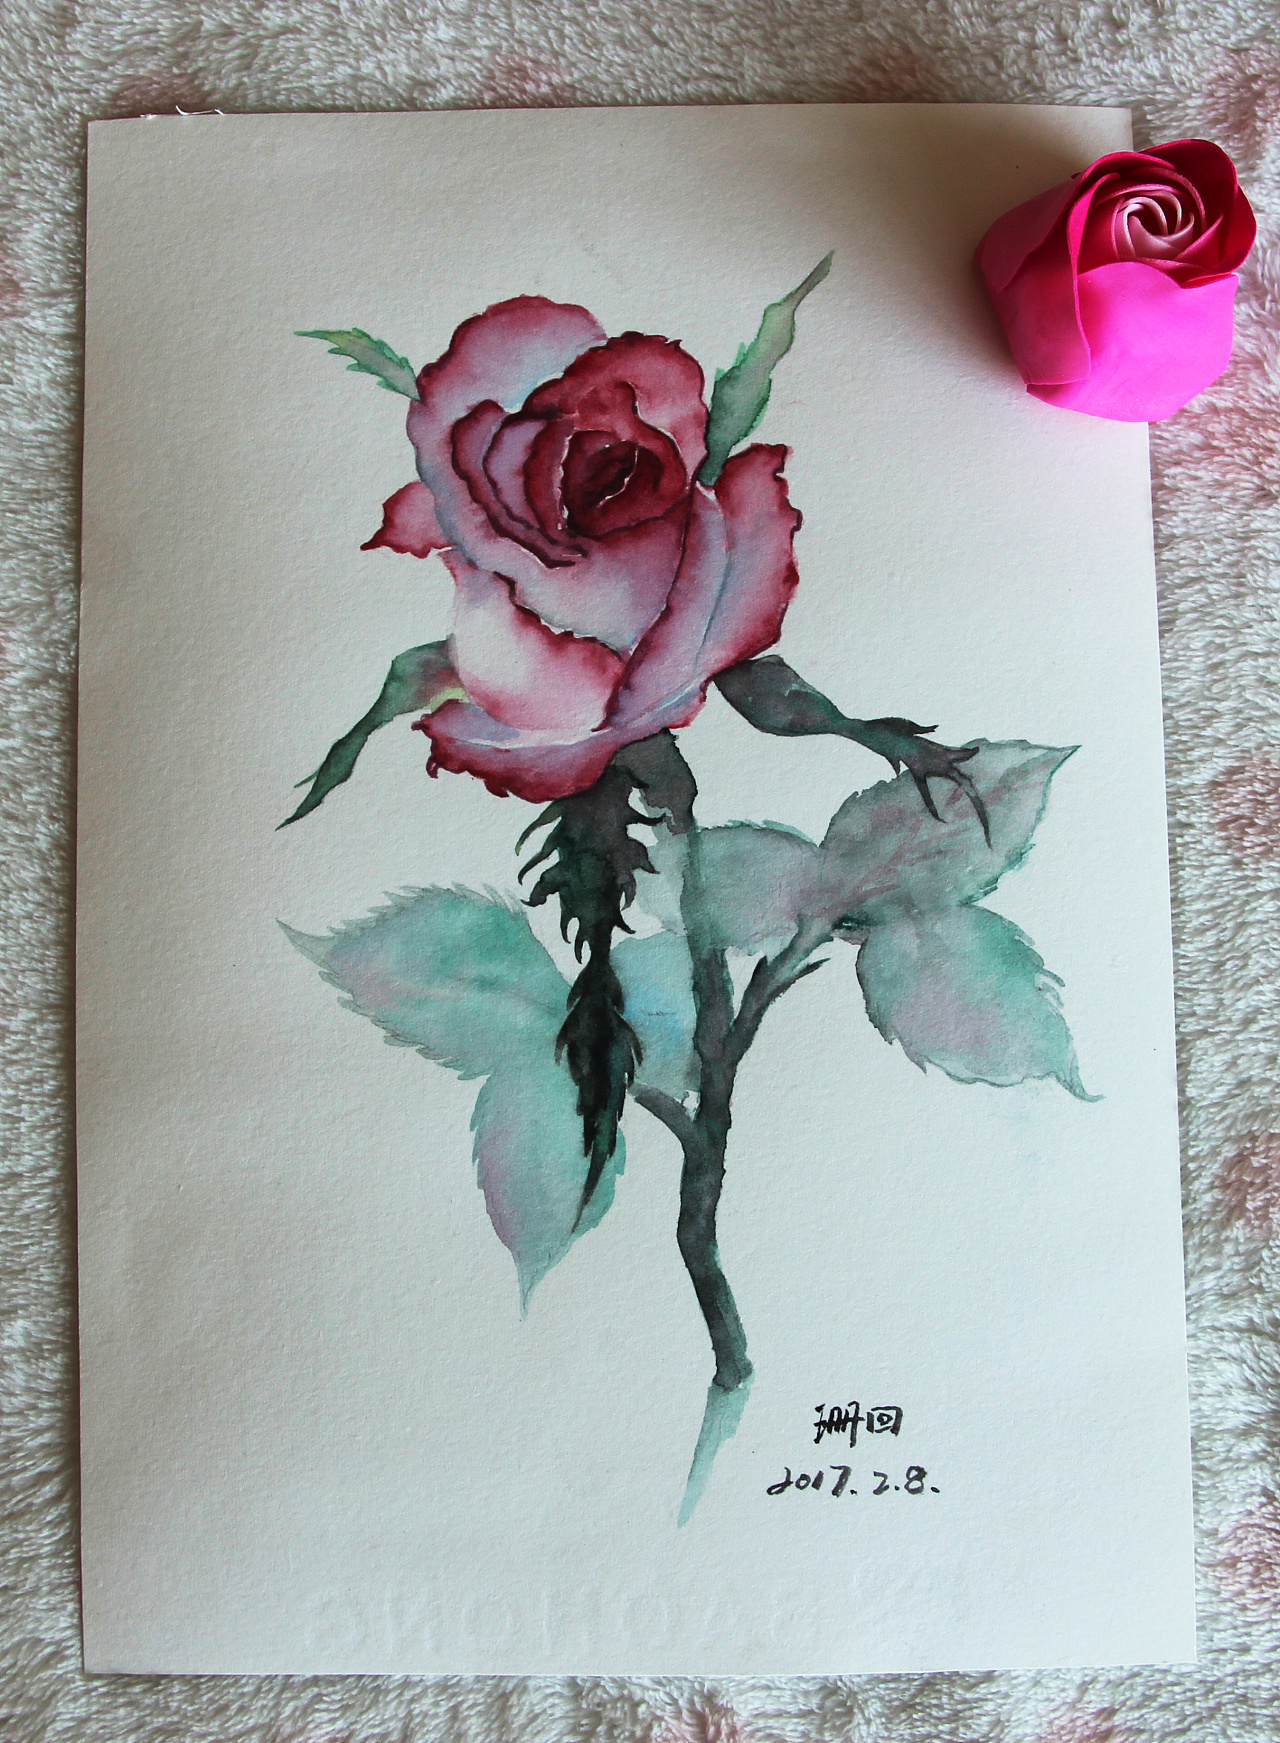 简笔画玫瑰花的画法图片步骤 - 有点网 - 好手艺